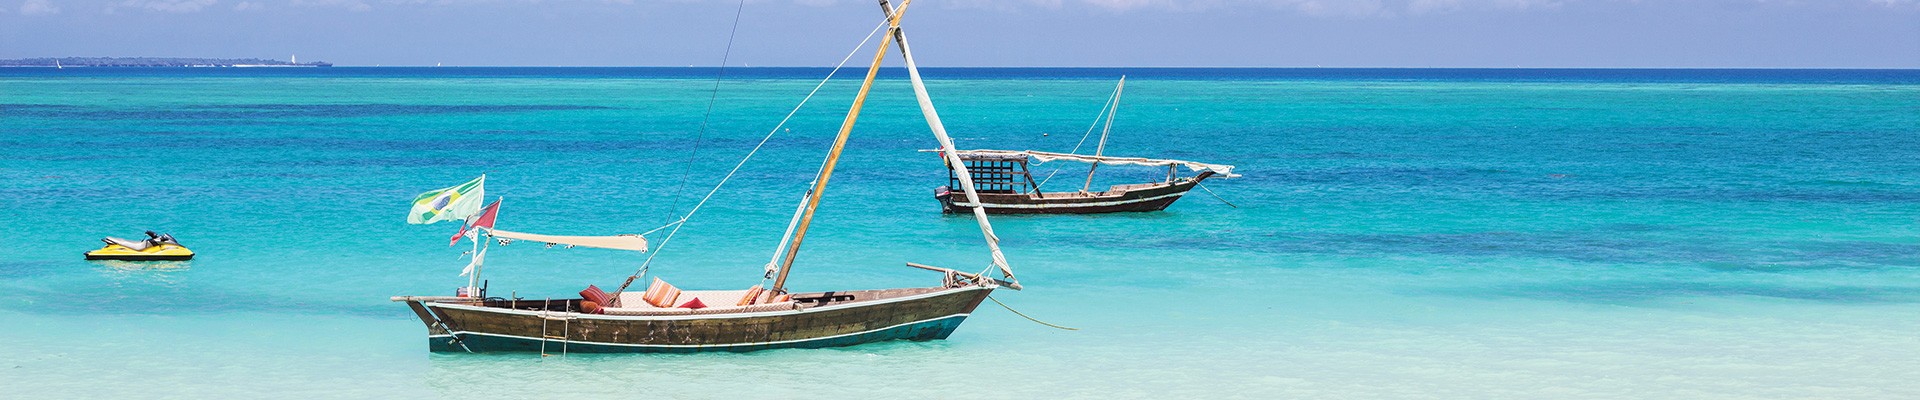 3* Plus Zanzibar Bay Resort - Zanzibar Package (7 Nights)